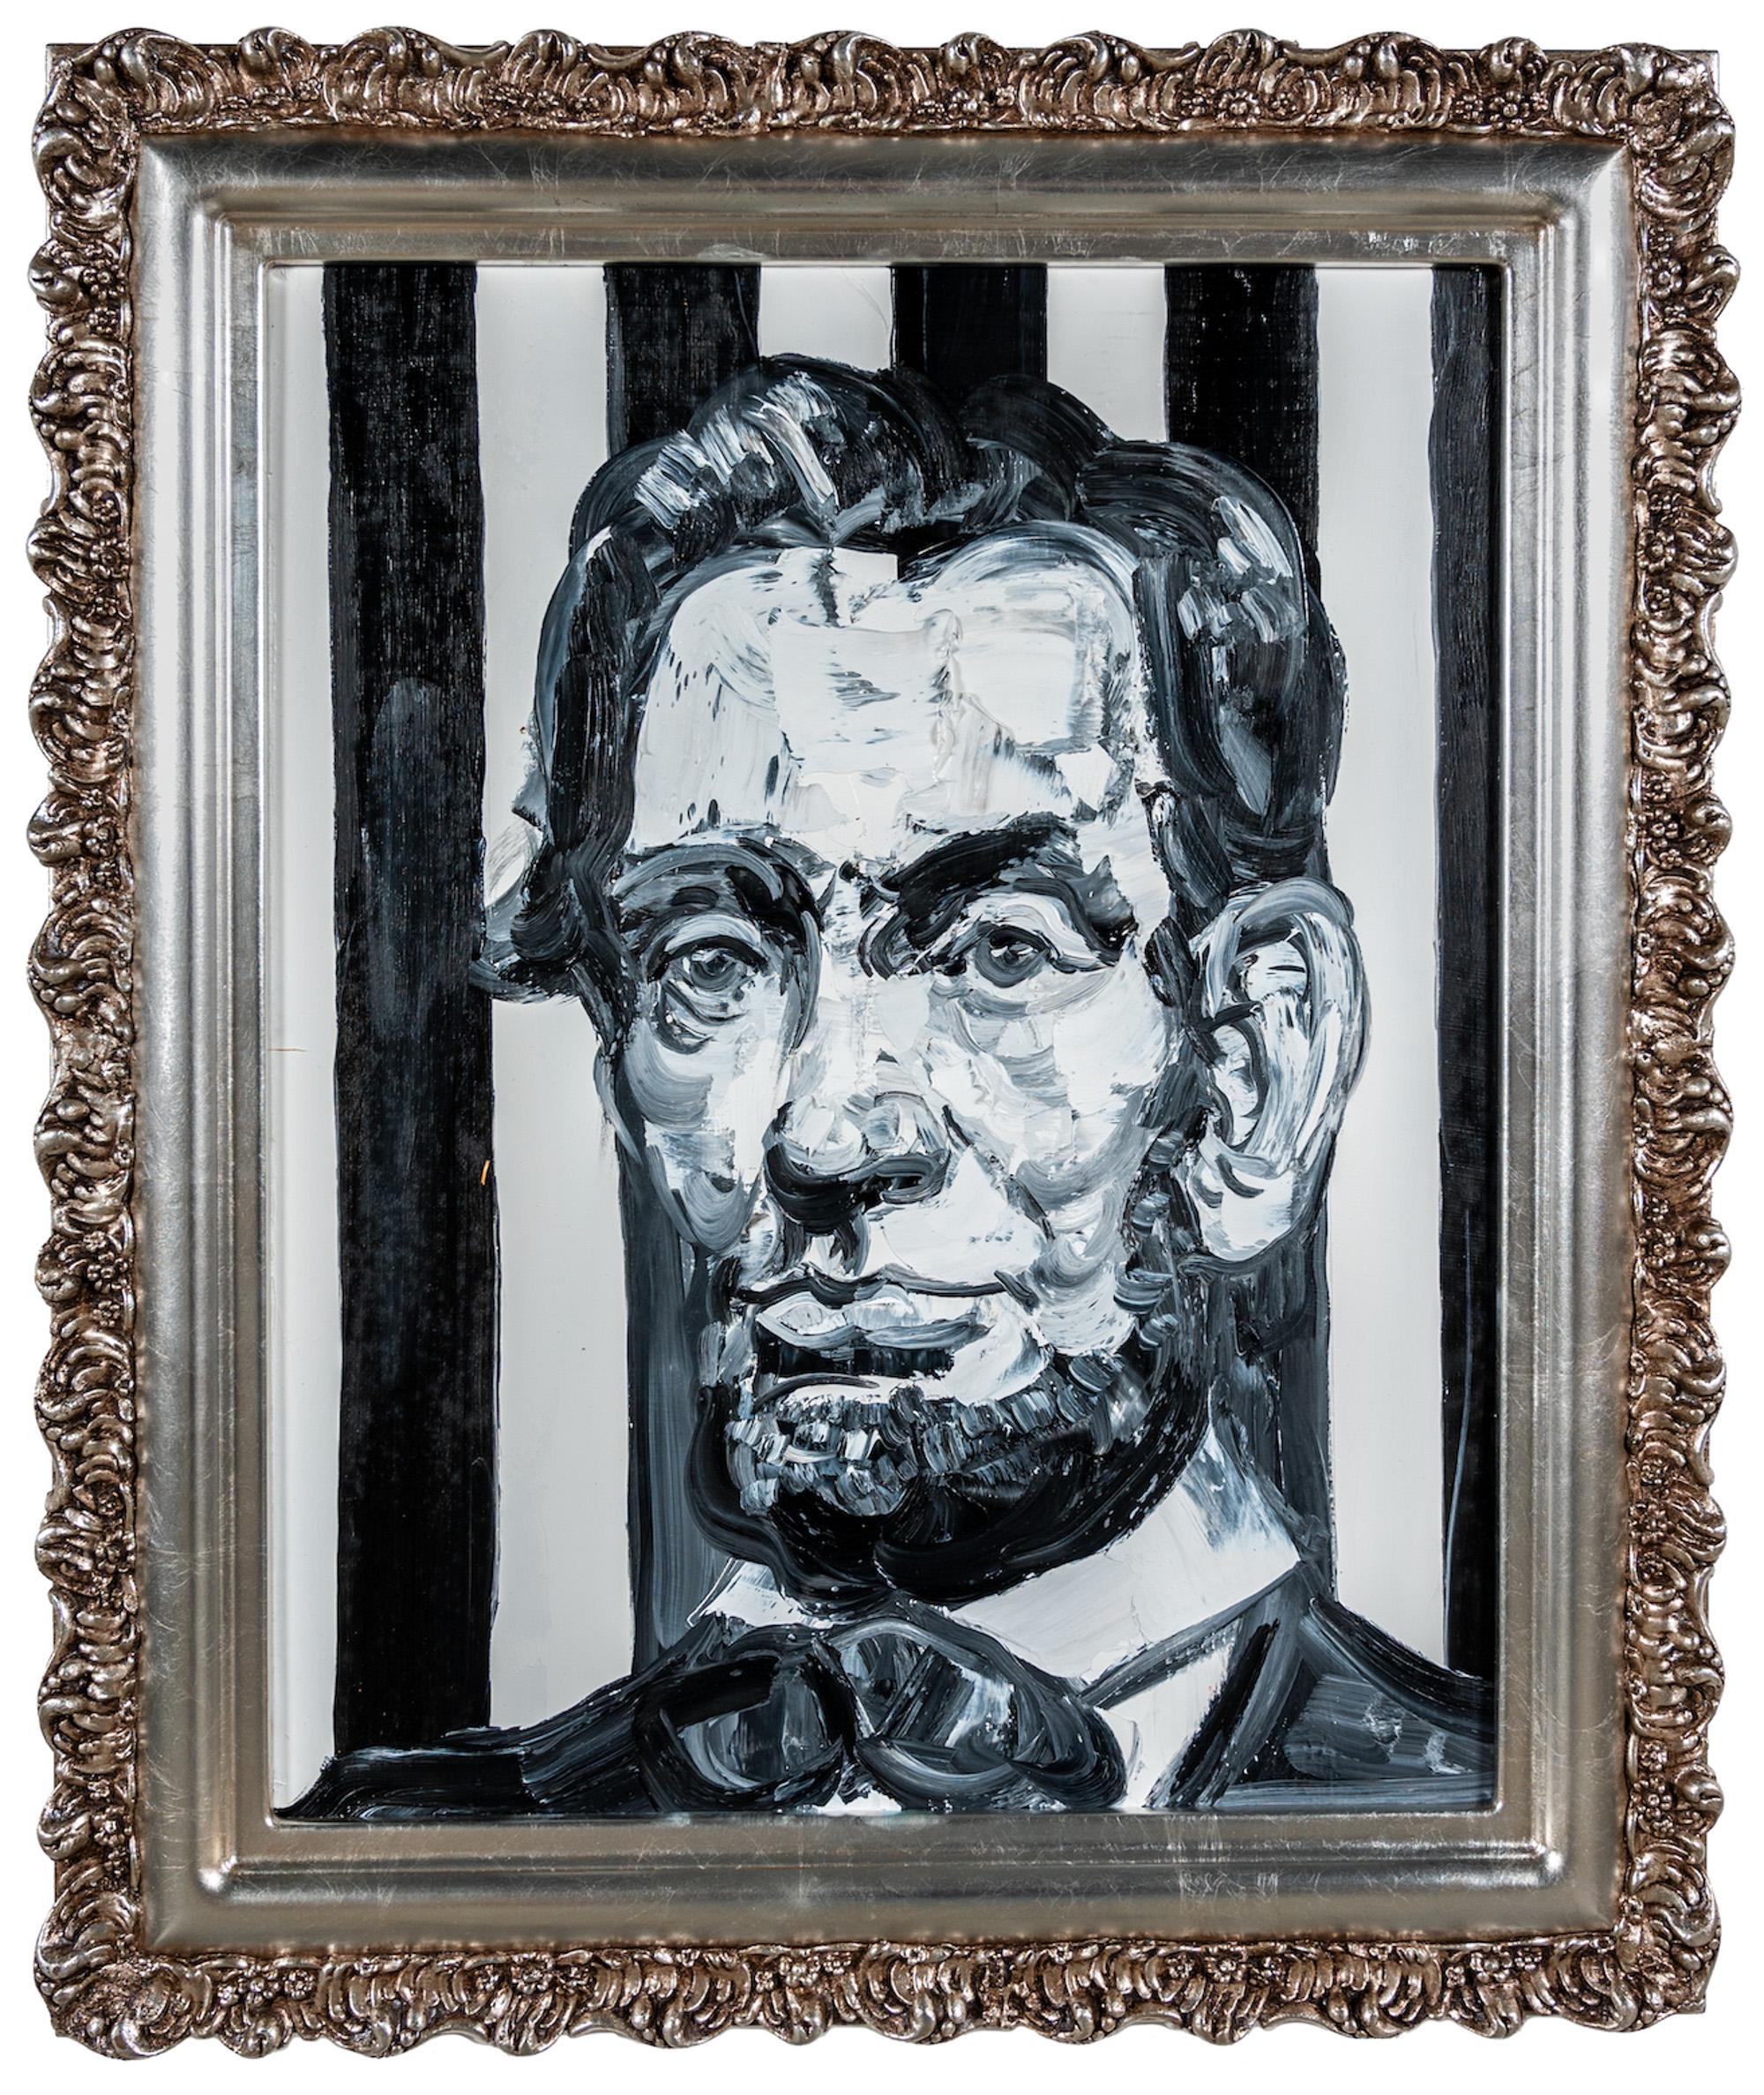 Hunt Slonem "Lincoln Black & White" Portrait Oil on Wood Framed Painting